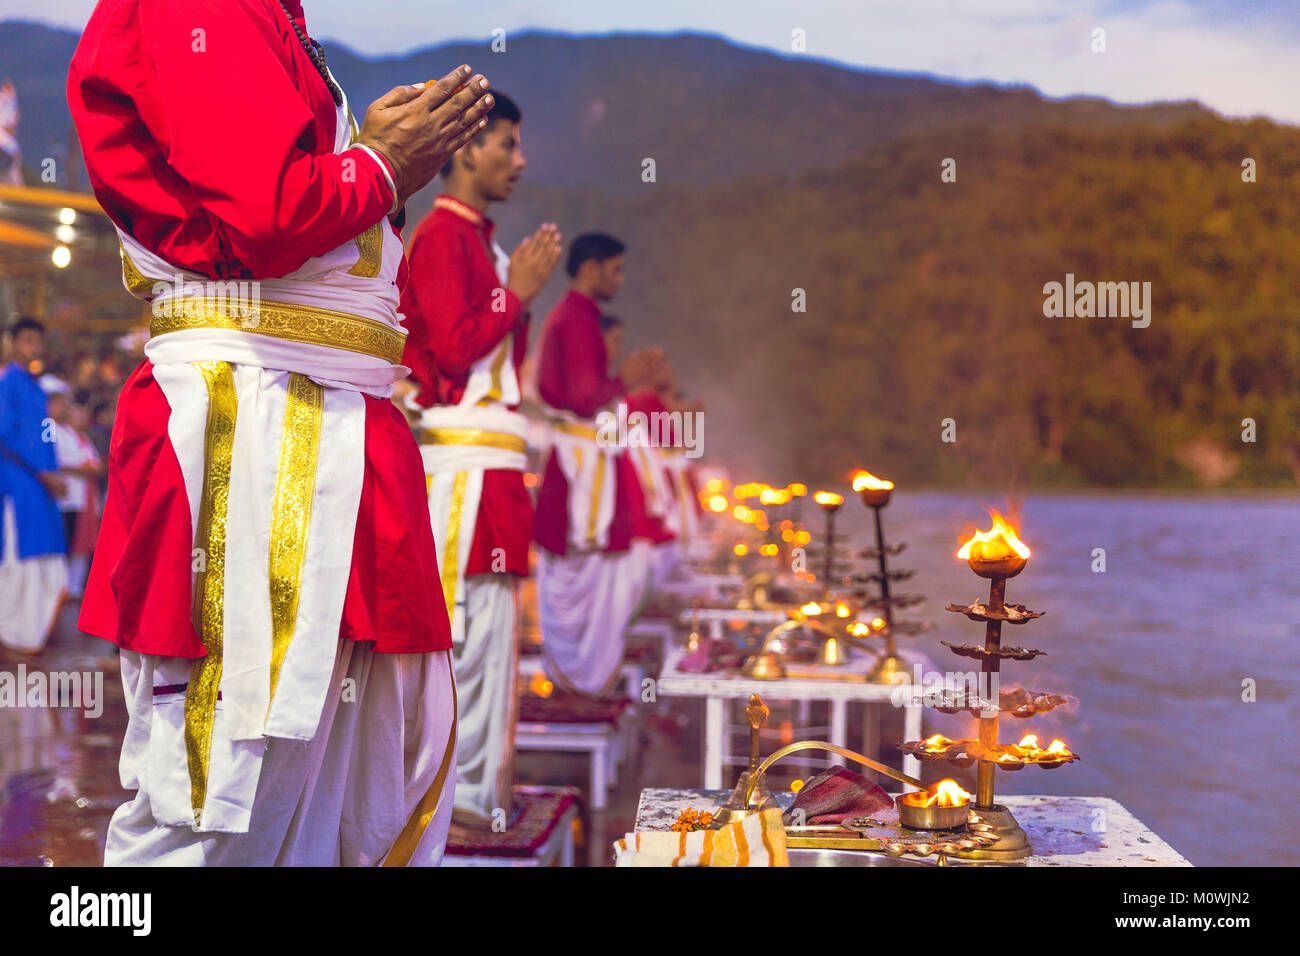 Rishikesh, Uttarakhand - 03 août 2016 : des prêtres en robe rouge dans la ville sainte de Rishikesh dans Uttarakhand, Inde au cours de la cérémonie de la lumière du soir Banque D'Images